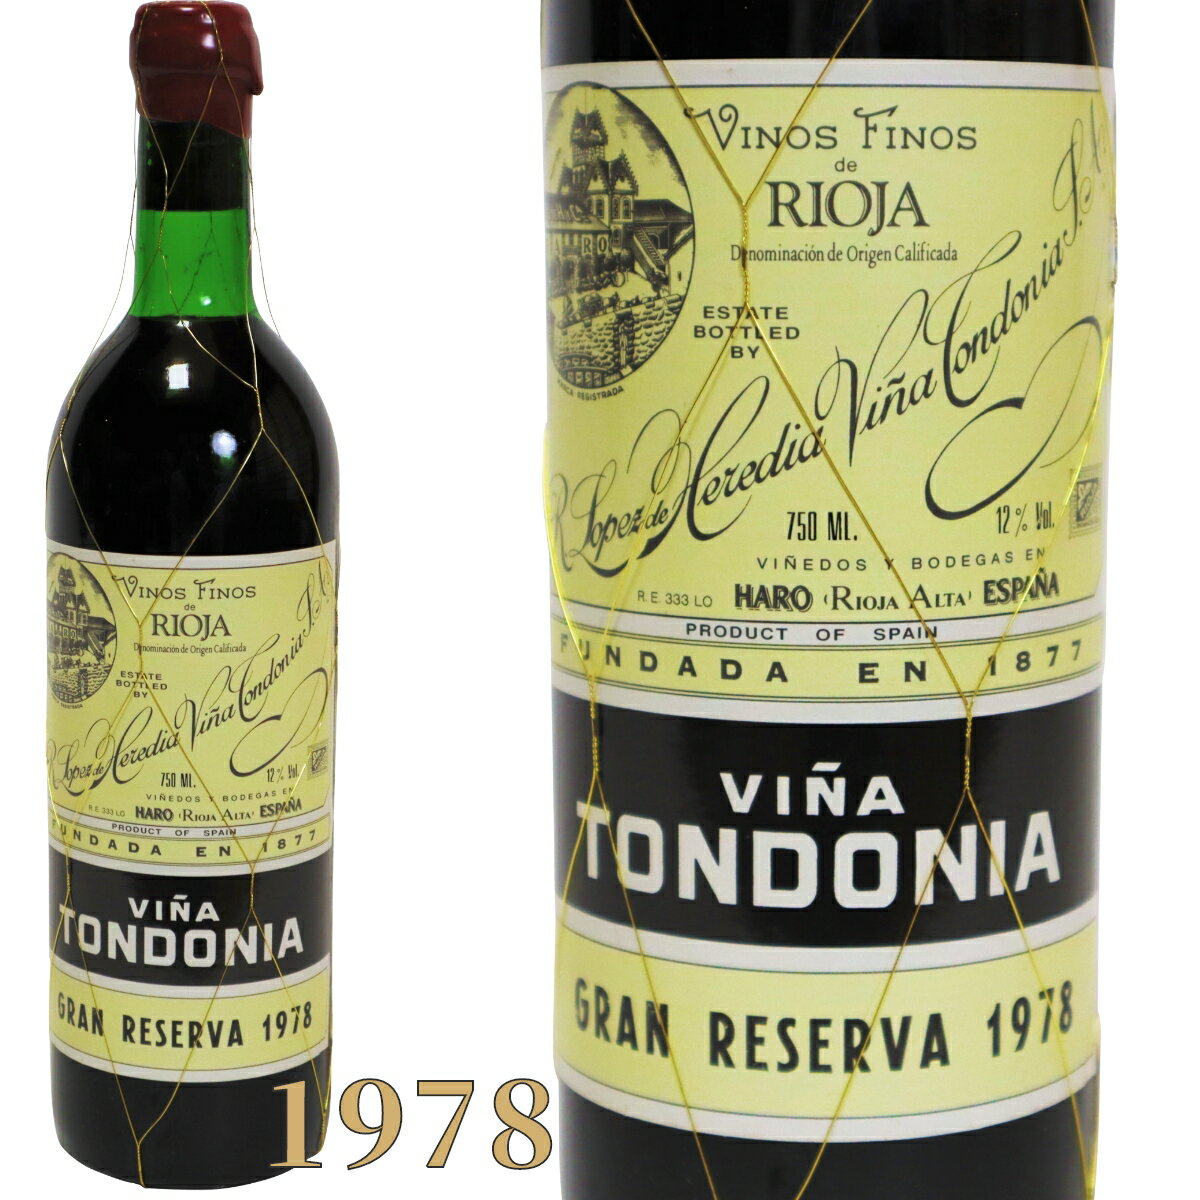 ■ワイン名（商品名）　ヴィーニャ トンドニア グラン レゼルヴァ 赤ワイン ティント リオハ アルタ 1978年 750ml VINA TONDONIA GRAN RESERVA TINTO [1978] 高級ワイン スペインワイン ヴィンテージ ビンテージ S-2 ■ワイン種別：赤ワイン ■ヴィンテージ：1978年 ■産地(エリア) ：スペイン リオハ アルタ ■容量(内容量) ：750ml ■アルコール度数：12％ ■価格：￥60,000円（税込） ※ギフトラッピングをオプションで追加された場合、ご注文時の自動配信メールでは価格に反映されておりませんが、受注メールにて正しい金額をお知らせいたします。 ■ワイン解説 伝統的なワインで熟成も深く、最上級のグラン・レゼルヴァです。 品種はテンプラニーリョを主体として厚みのある味わいのガルナッチャ、芳香性の高いグラシアーノをブレンドするものが多い。 グラン・レゼルヴァは最も成熟が進んだタイプで熟成感のある動物的なニュアンス、レンガ色の外見でまろやかで芳醇、バランスが良くエレガント、6年またはそれ以上寝かせた申し分ない模範的な辛口の赤ワイン 品種はテンプラニーリョ75%、ガルナッチャ15%、マスエロ5%、グラシアーノ5%